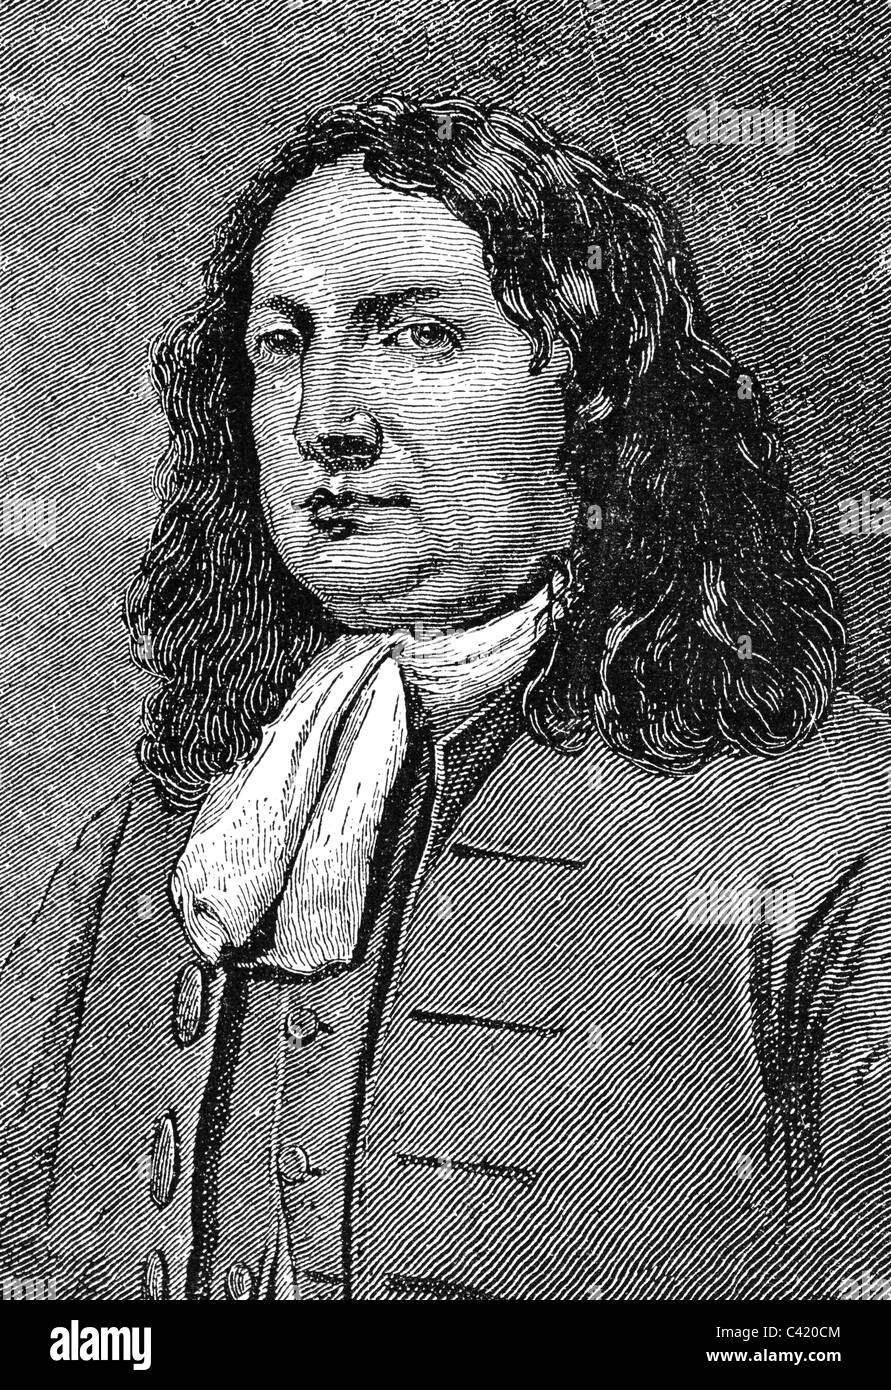 Penn, William, 14.10.1644 - 30.7.1718, politicien anglais, Quaker, fondateur de Pennsylvanie, portrait, gravure de bois, XIXe siècle, Banque D'Images